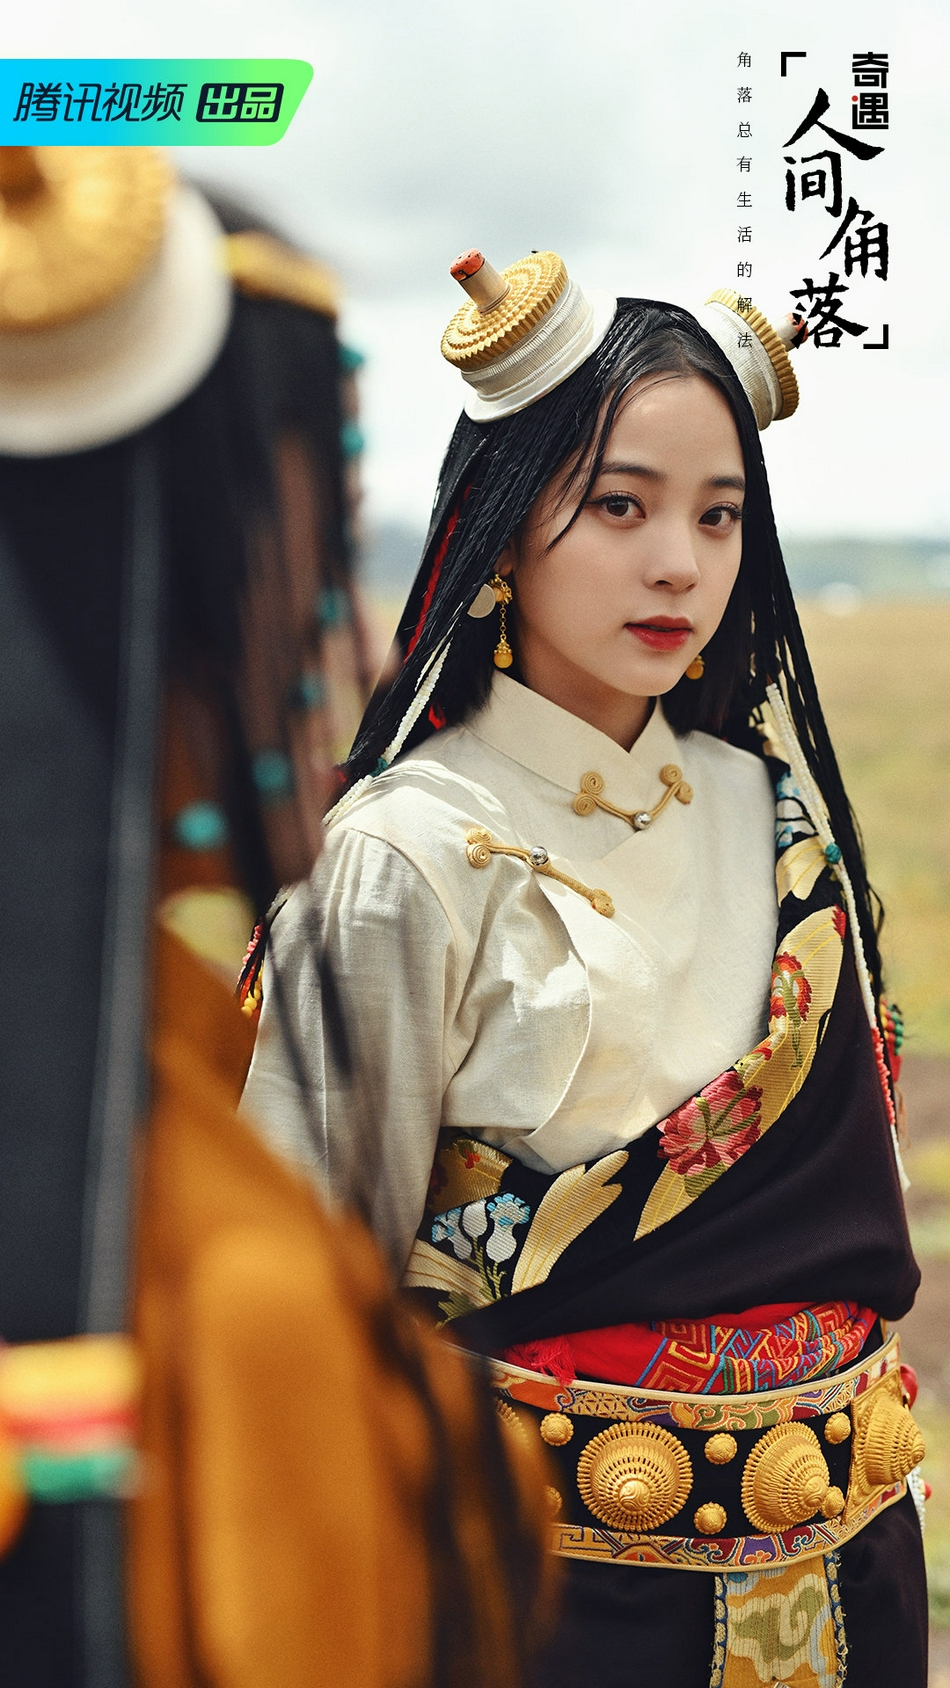 欧阳娜娜在藏族婚礼上当伴娘 民族风伴娘服惊艳